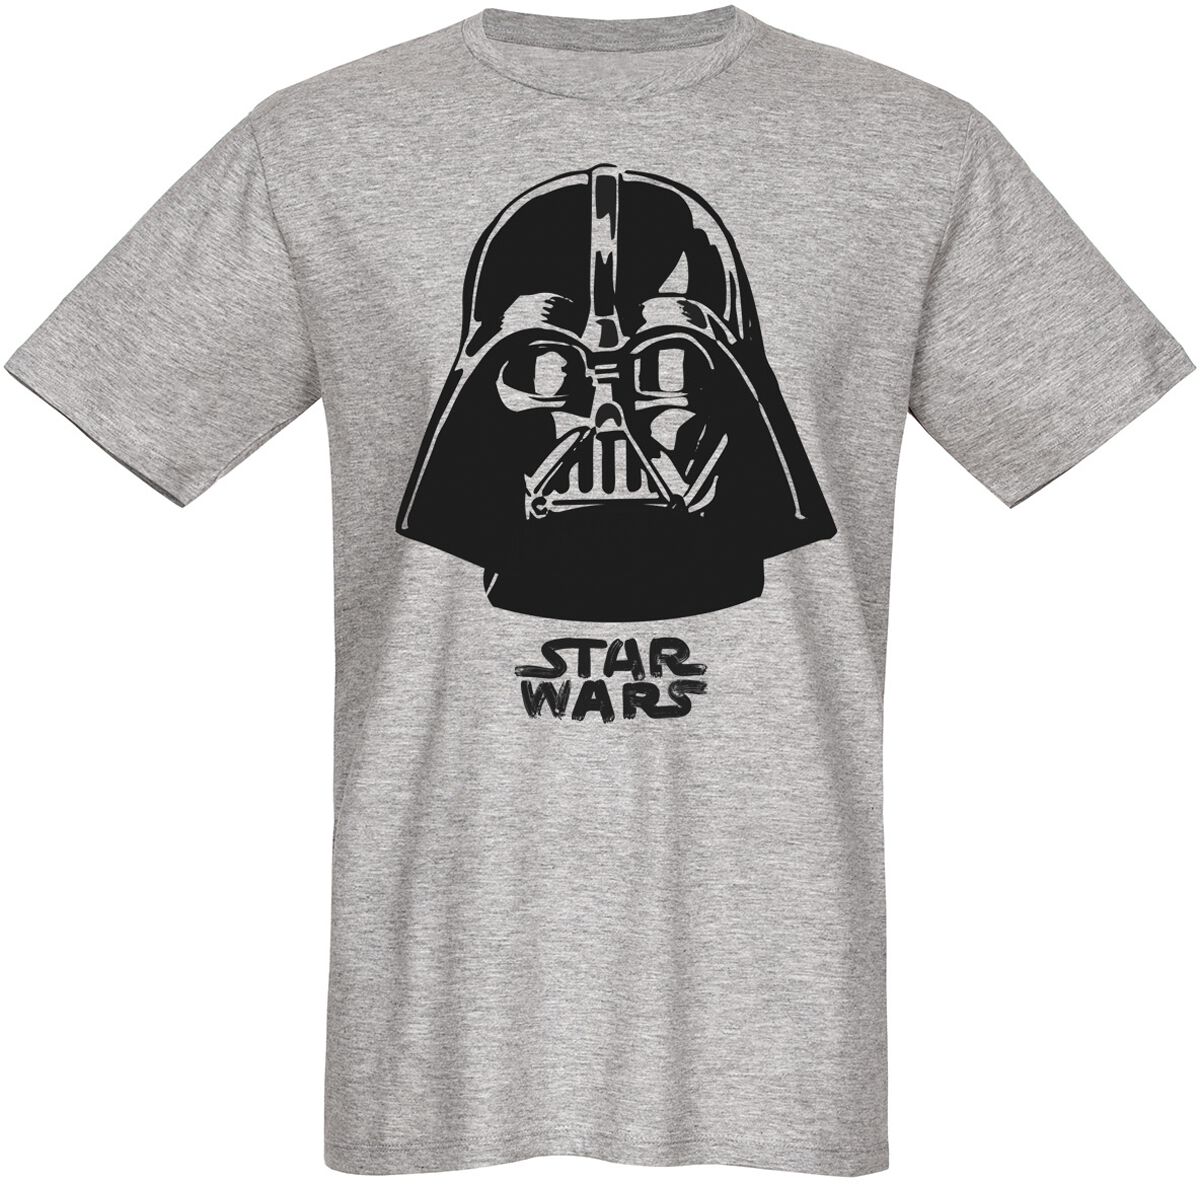 Star Wars T-Shirt - Darth Vader - The Boss - S bis 3XL - für Männer - Größe L - grau  - Lizenzierter Fanartikel